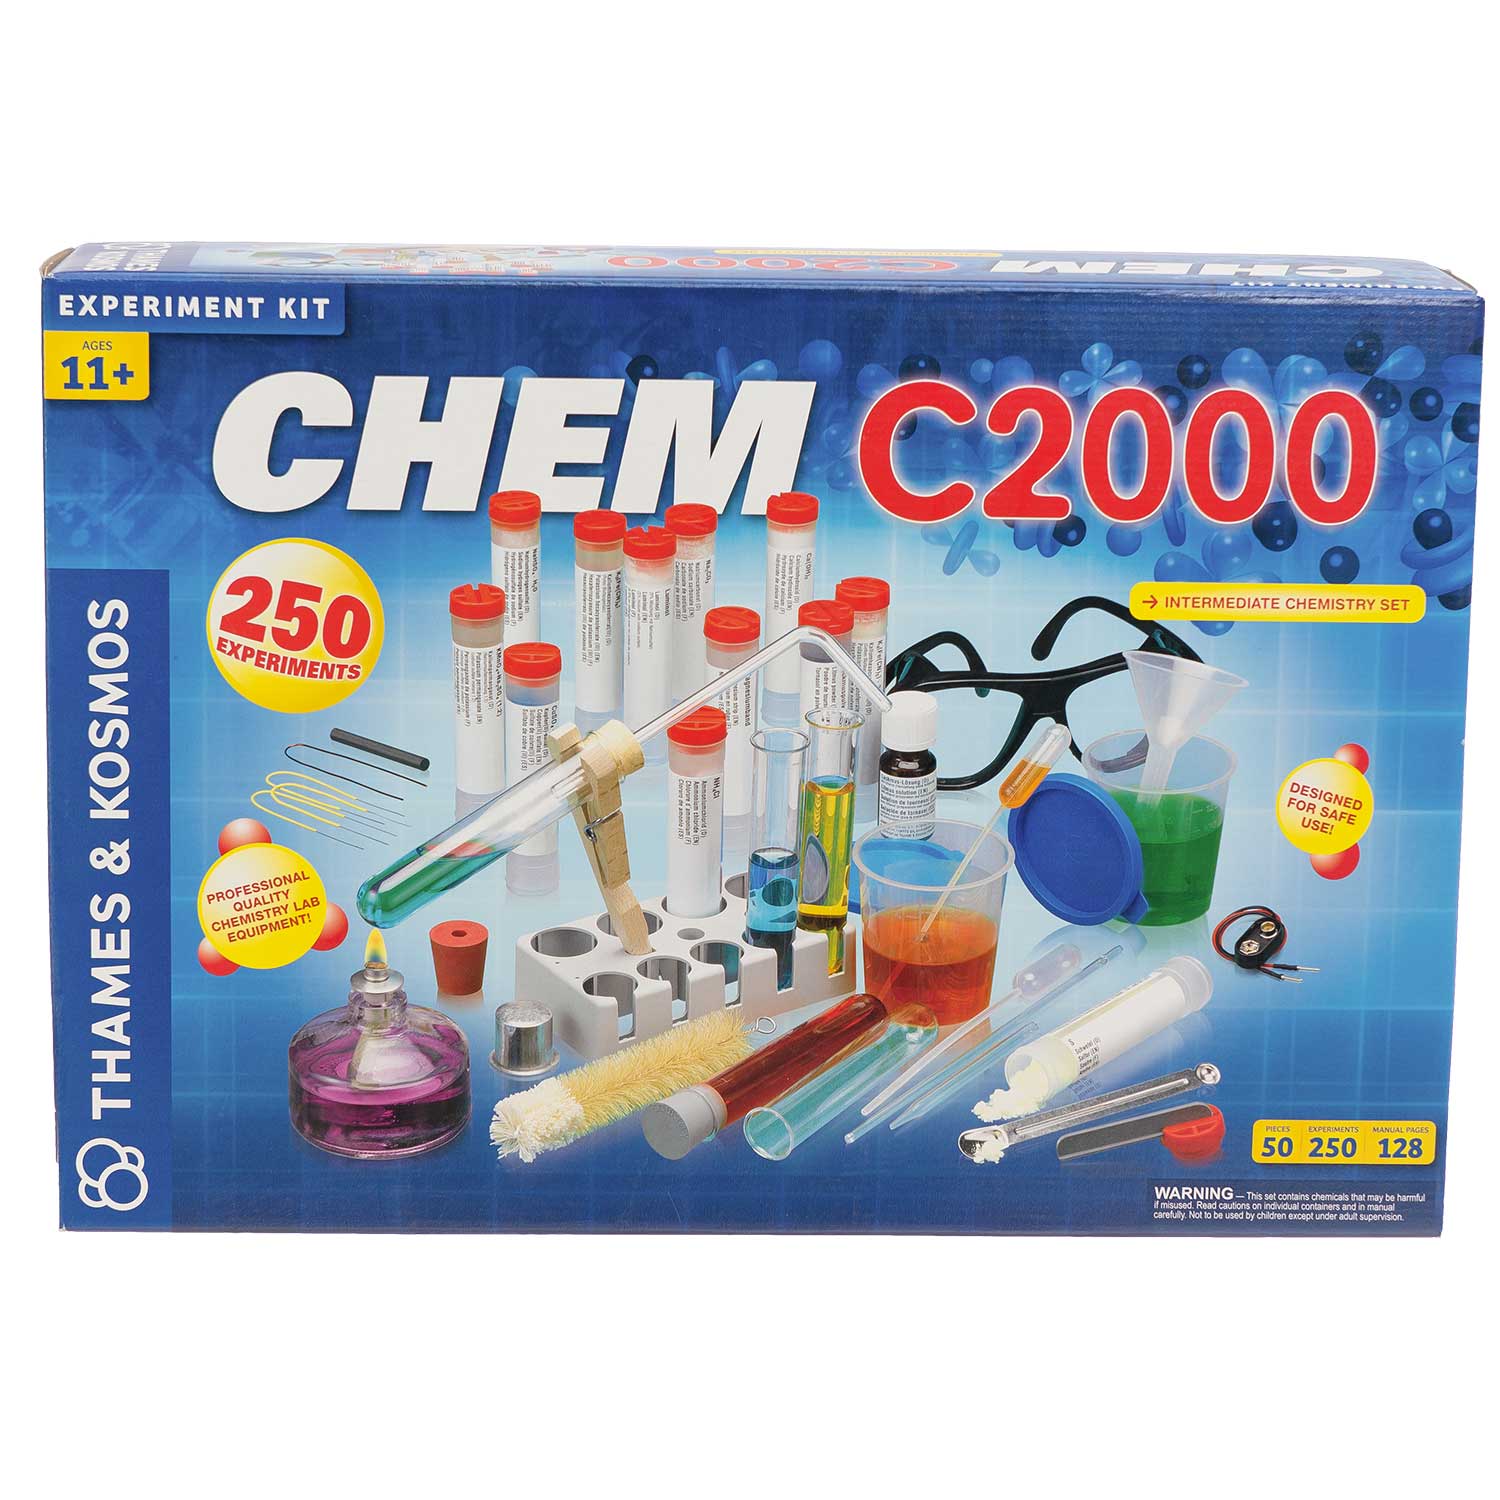 chemistry kit for teenager